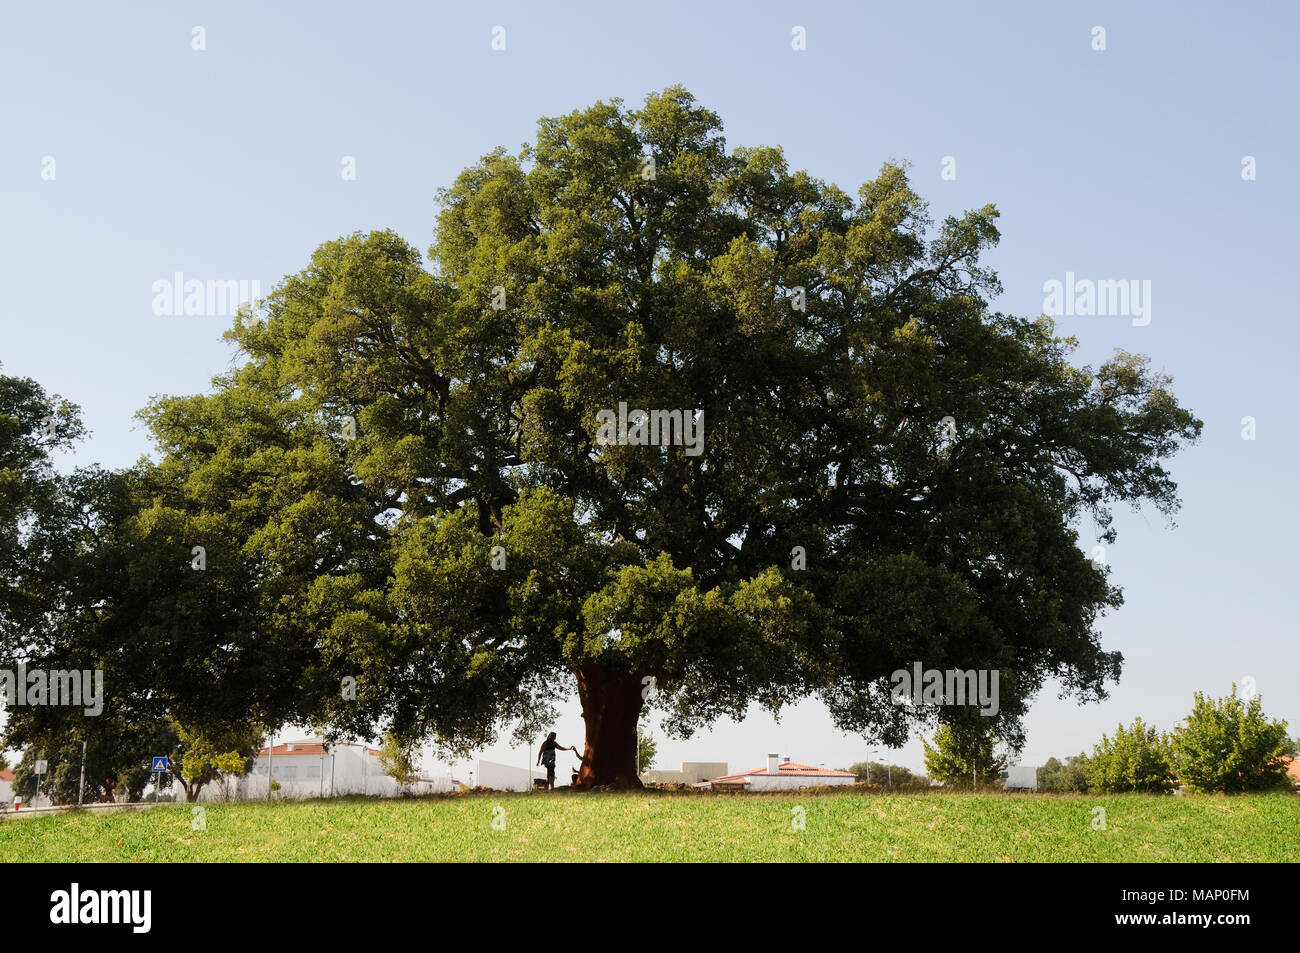 Un très vieux arbres de liège, datée de 1795.La cork de cet arbre donne 100,000 stopples pour bouteilles de vin. Águas de Moura, Portugal Banque D'Images